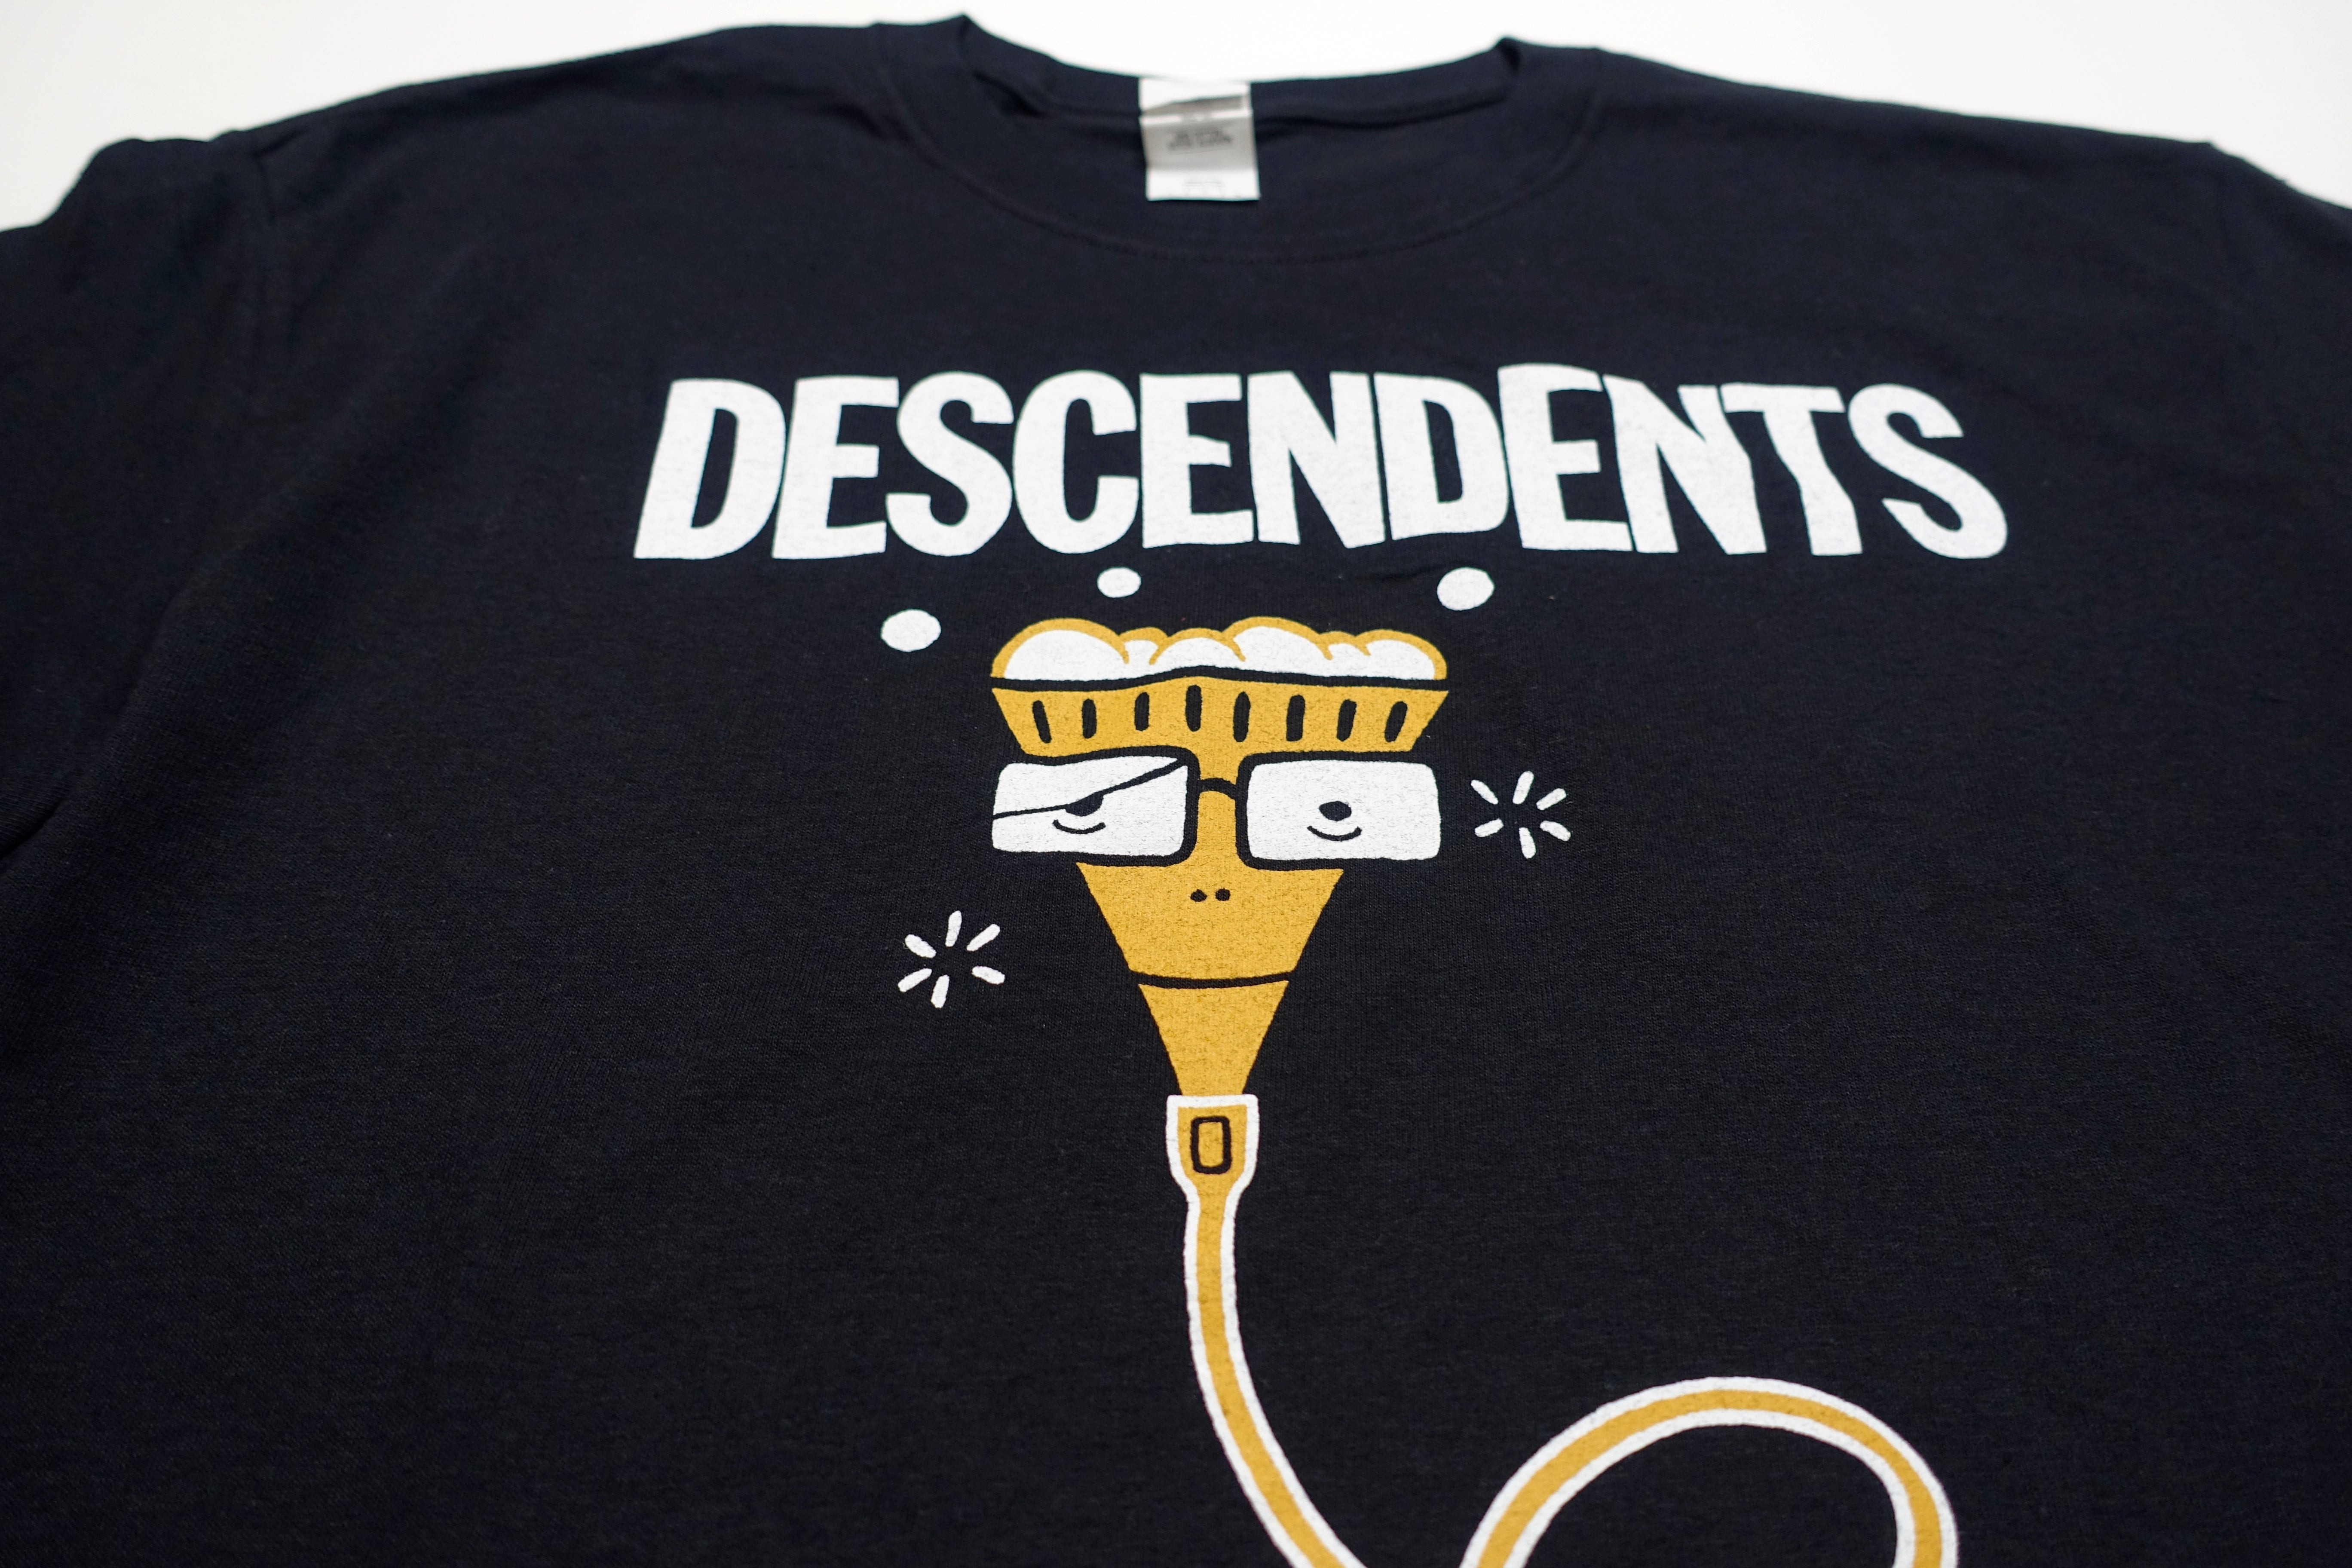 Descendents - Atlantic City Beer & Music Fest 2018 Tour Shirt Size Large